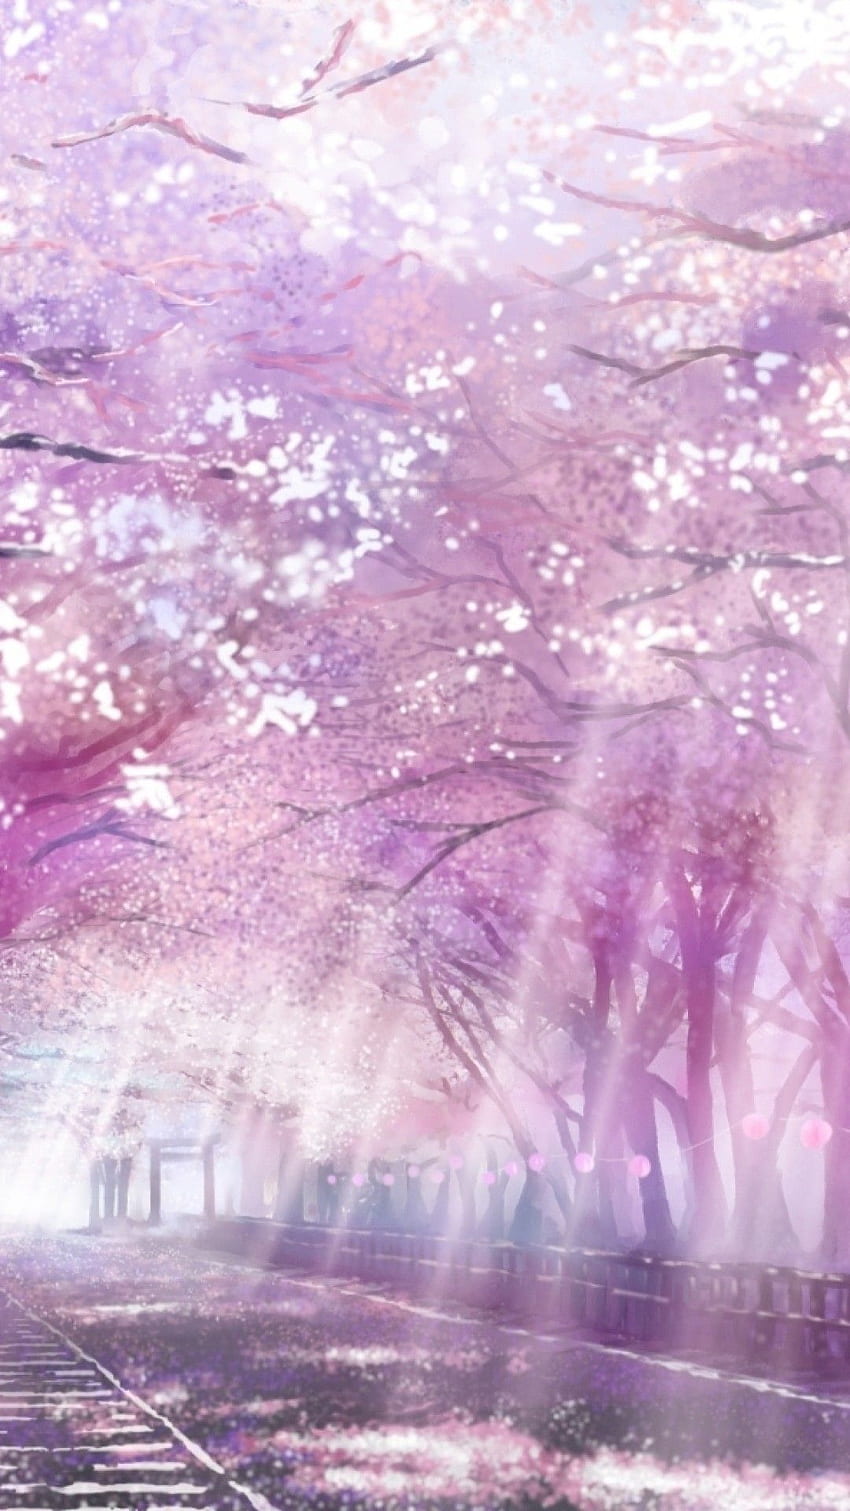 Chào mừng bạn đến với hình ảnh Anime hoa anh đào đáng yêu! Nếu bạn yêu thích Anime và yêu cảnh đẹp của hoa anh đào, hãy xem bức ảnh này và cảm nhận sự yên tĩnh, thanh tao trong từng chi tiết của nó.